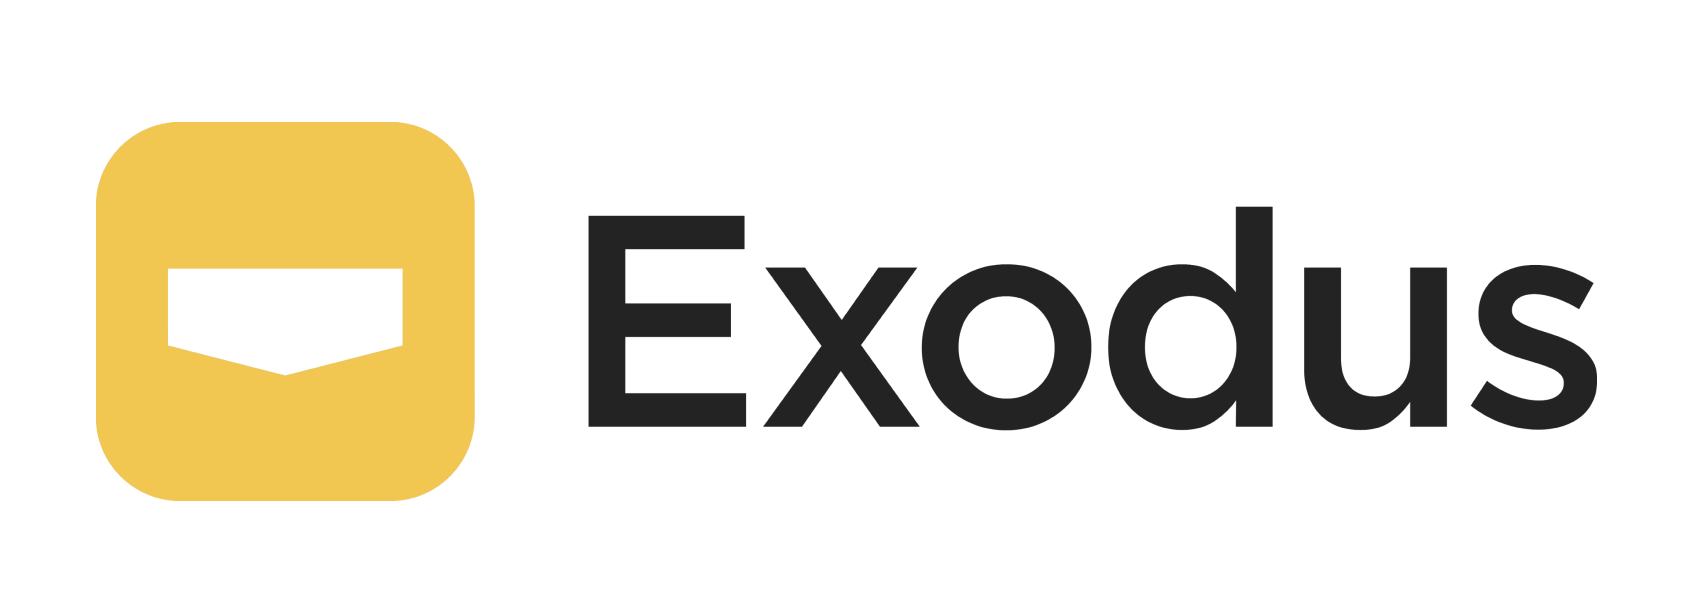 Exodus 90